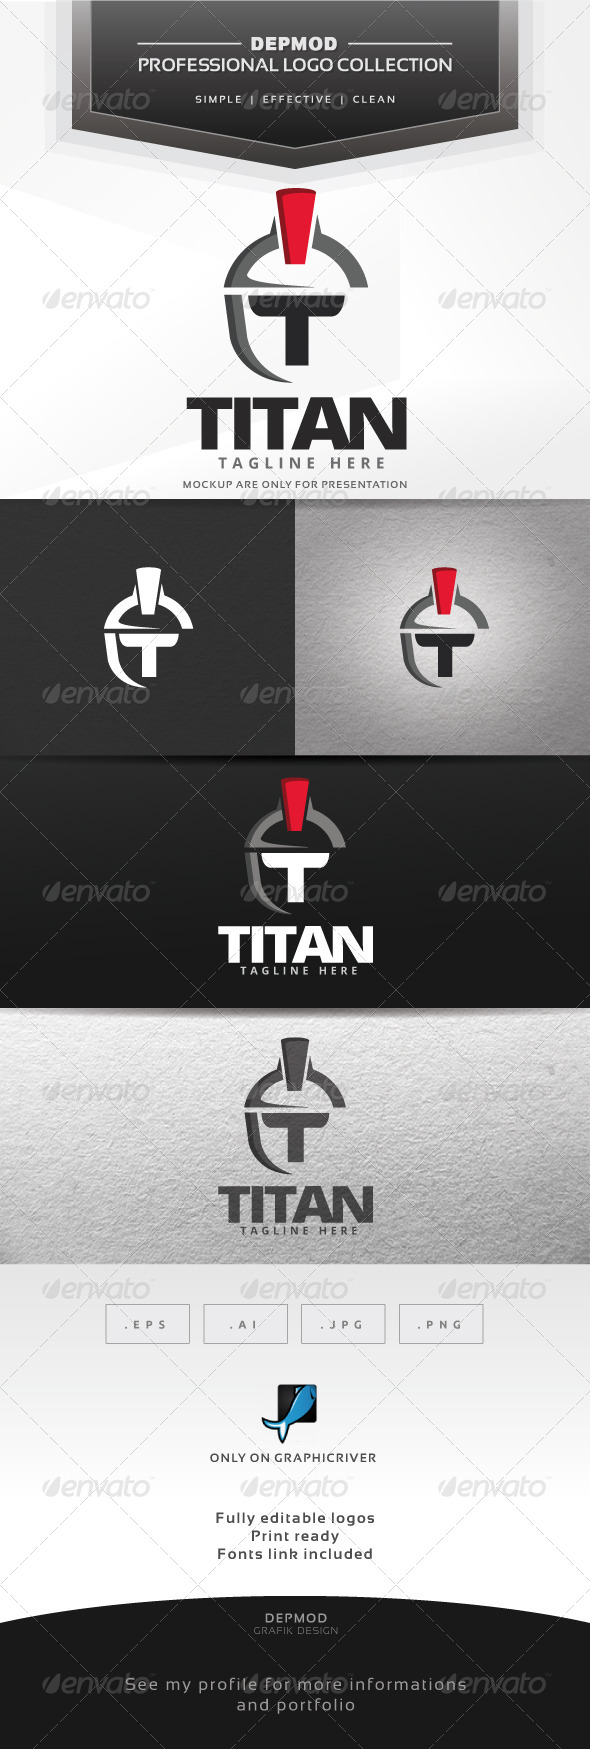 GraphicRiver Titan Logo 7638719